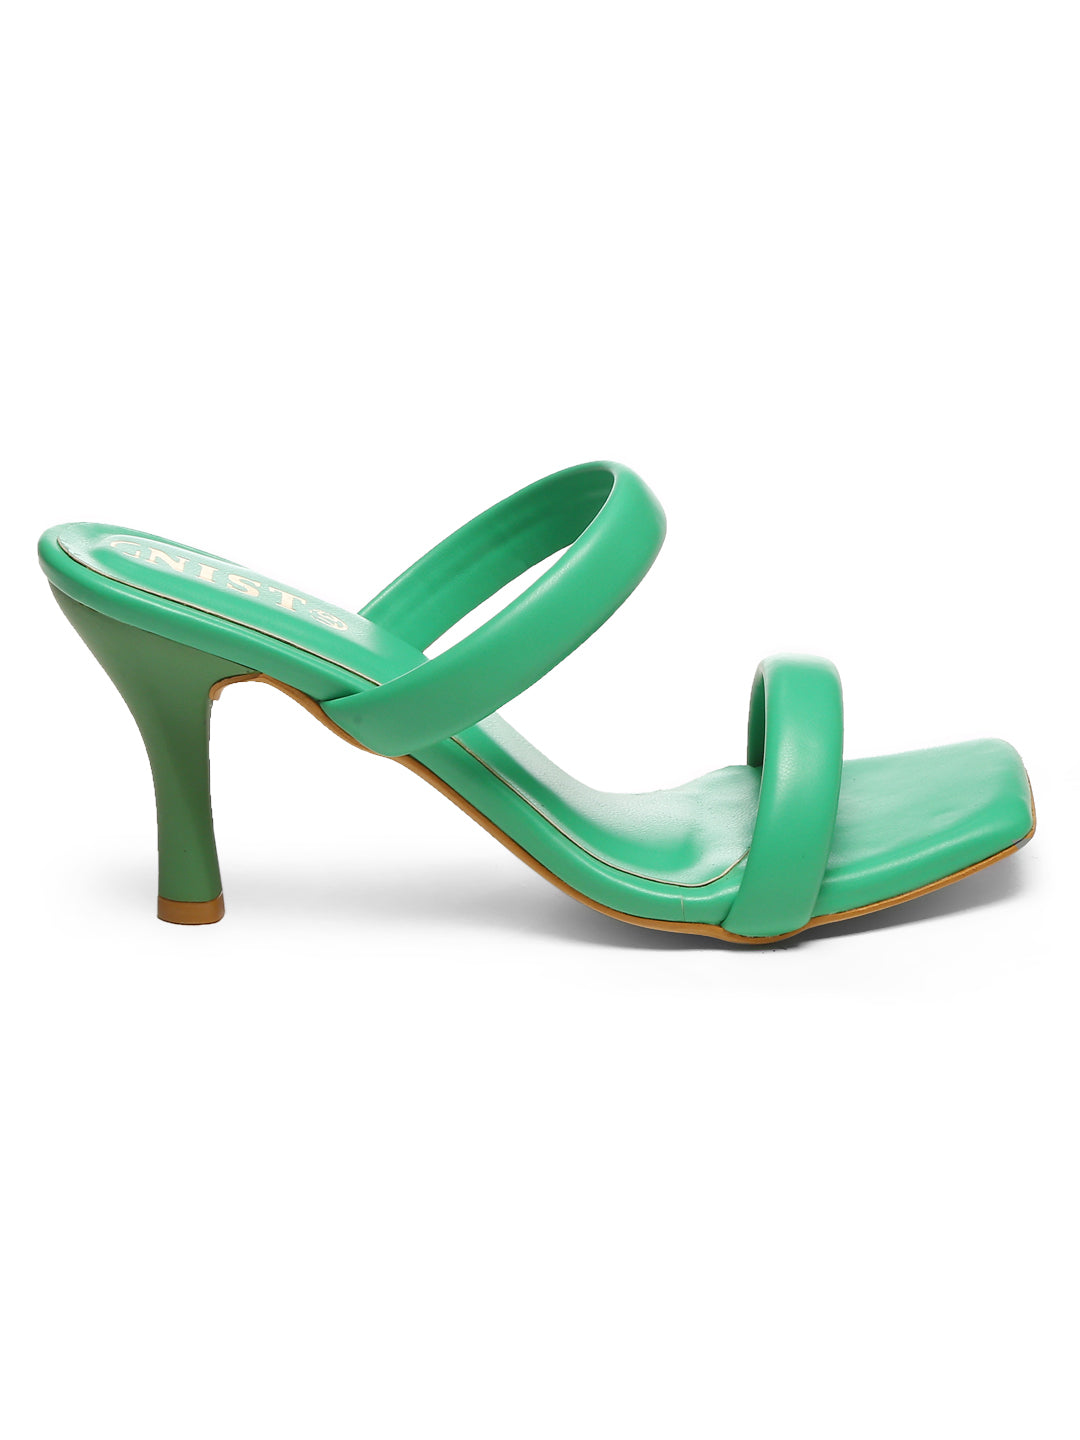 GNIST Green Quilted Strap Stilettos Heel